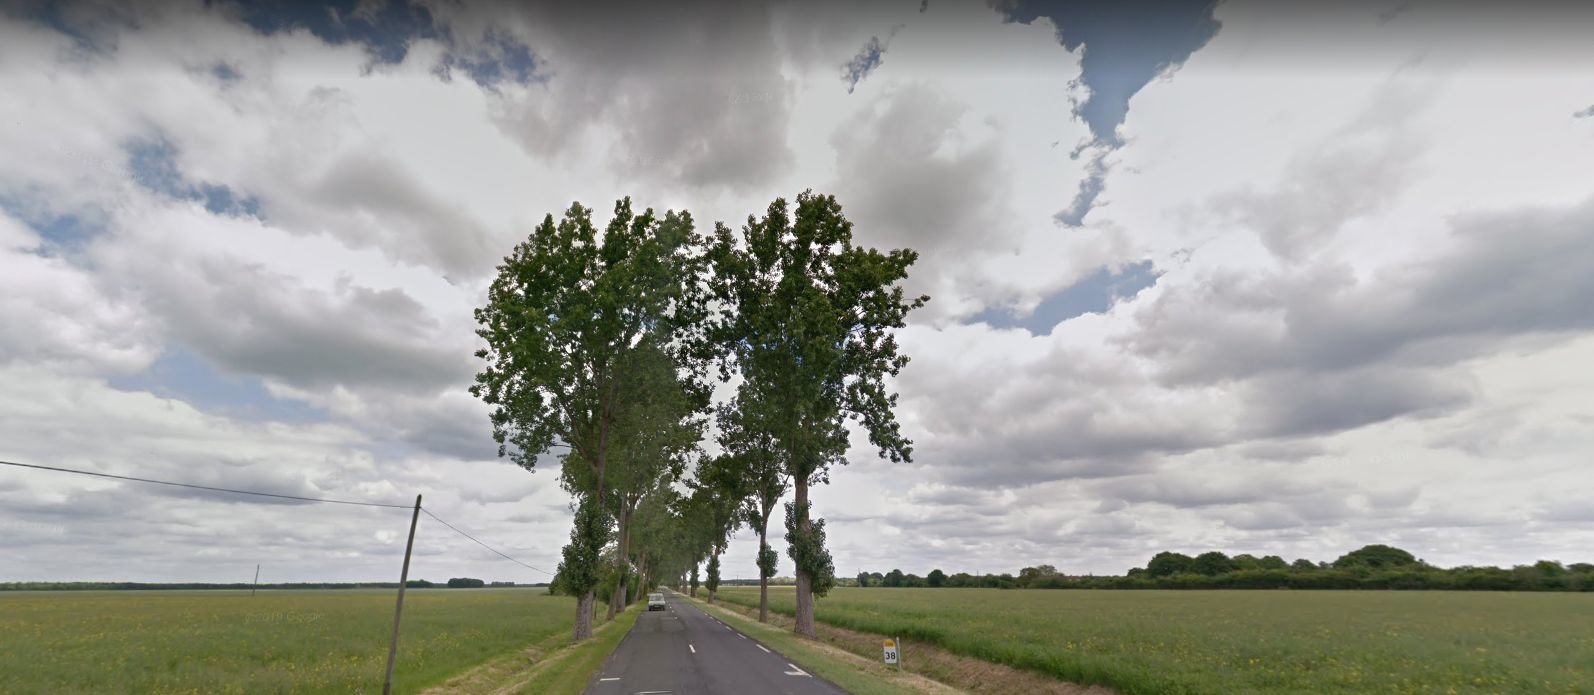 427 arbres seront remplacés sur la D988 entre Saint-Arnoult-en-Yvelines et Ablis à partir de ce lundi. Google Street View.